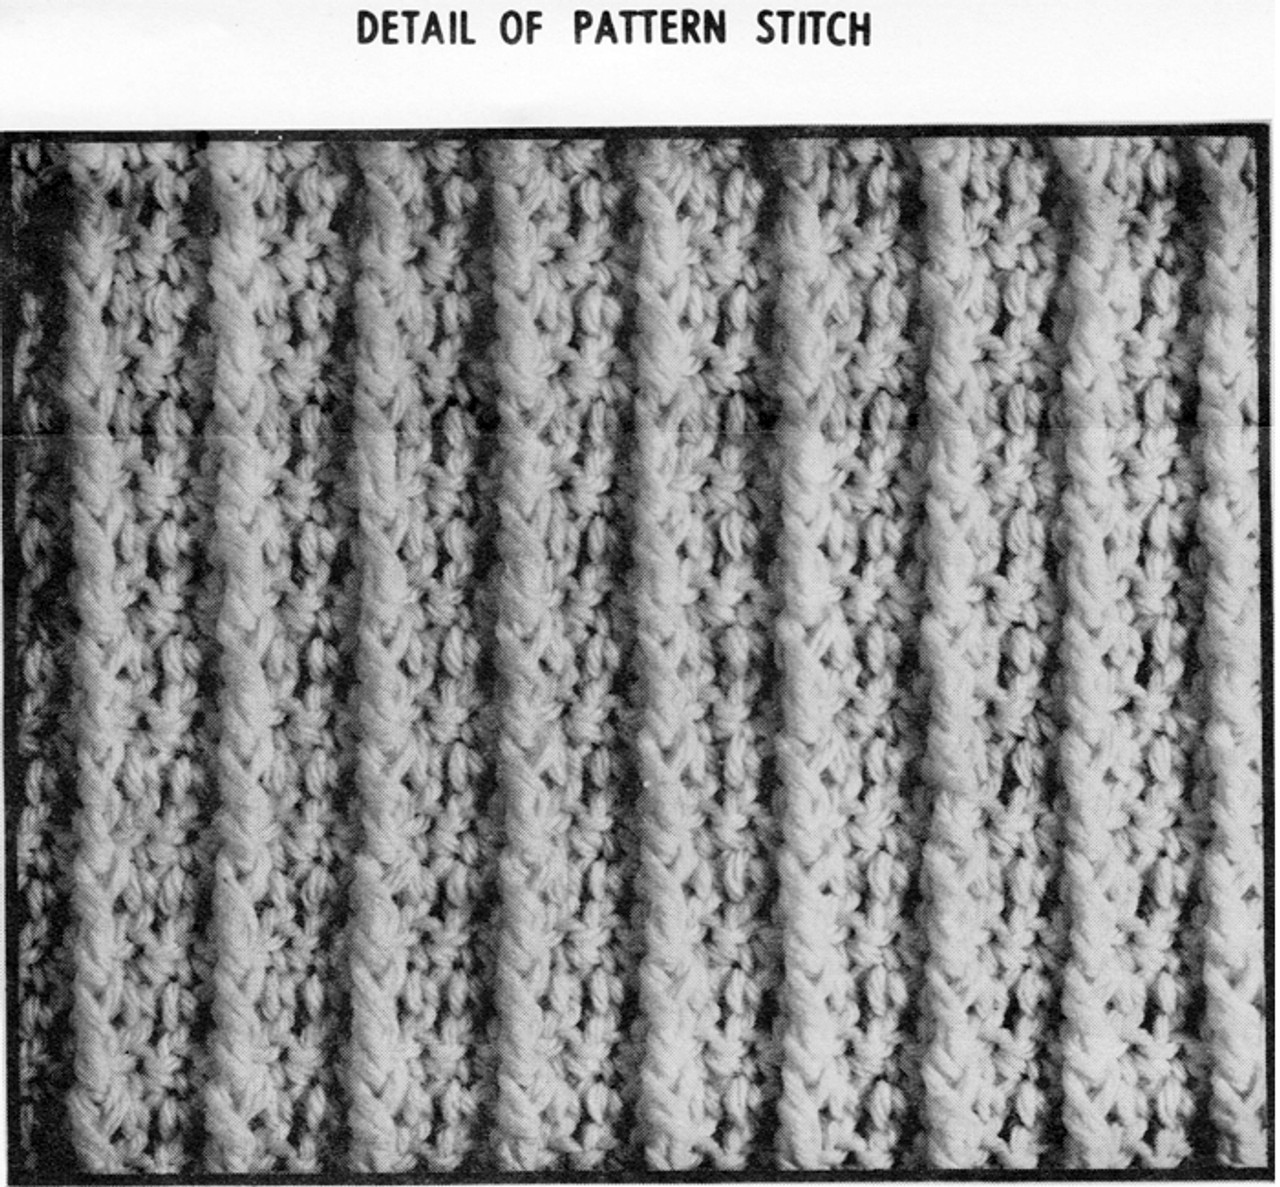 Pattern Stitch Illustration Crochet Vest